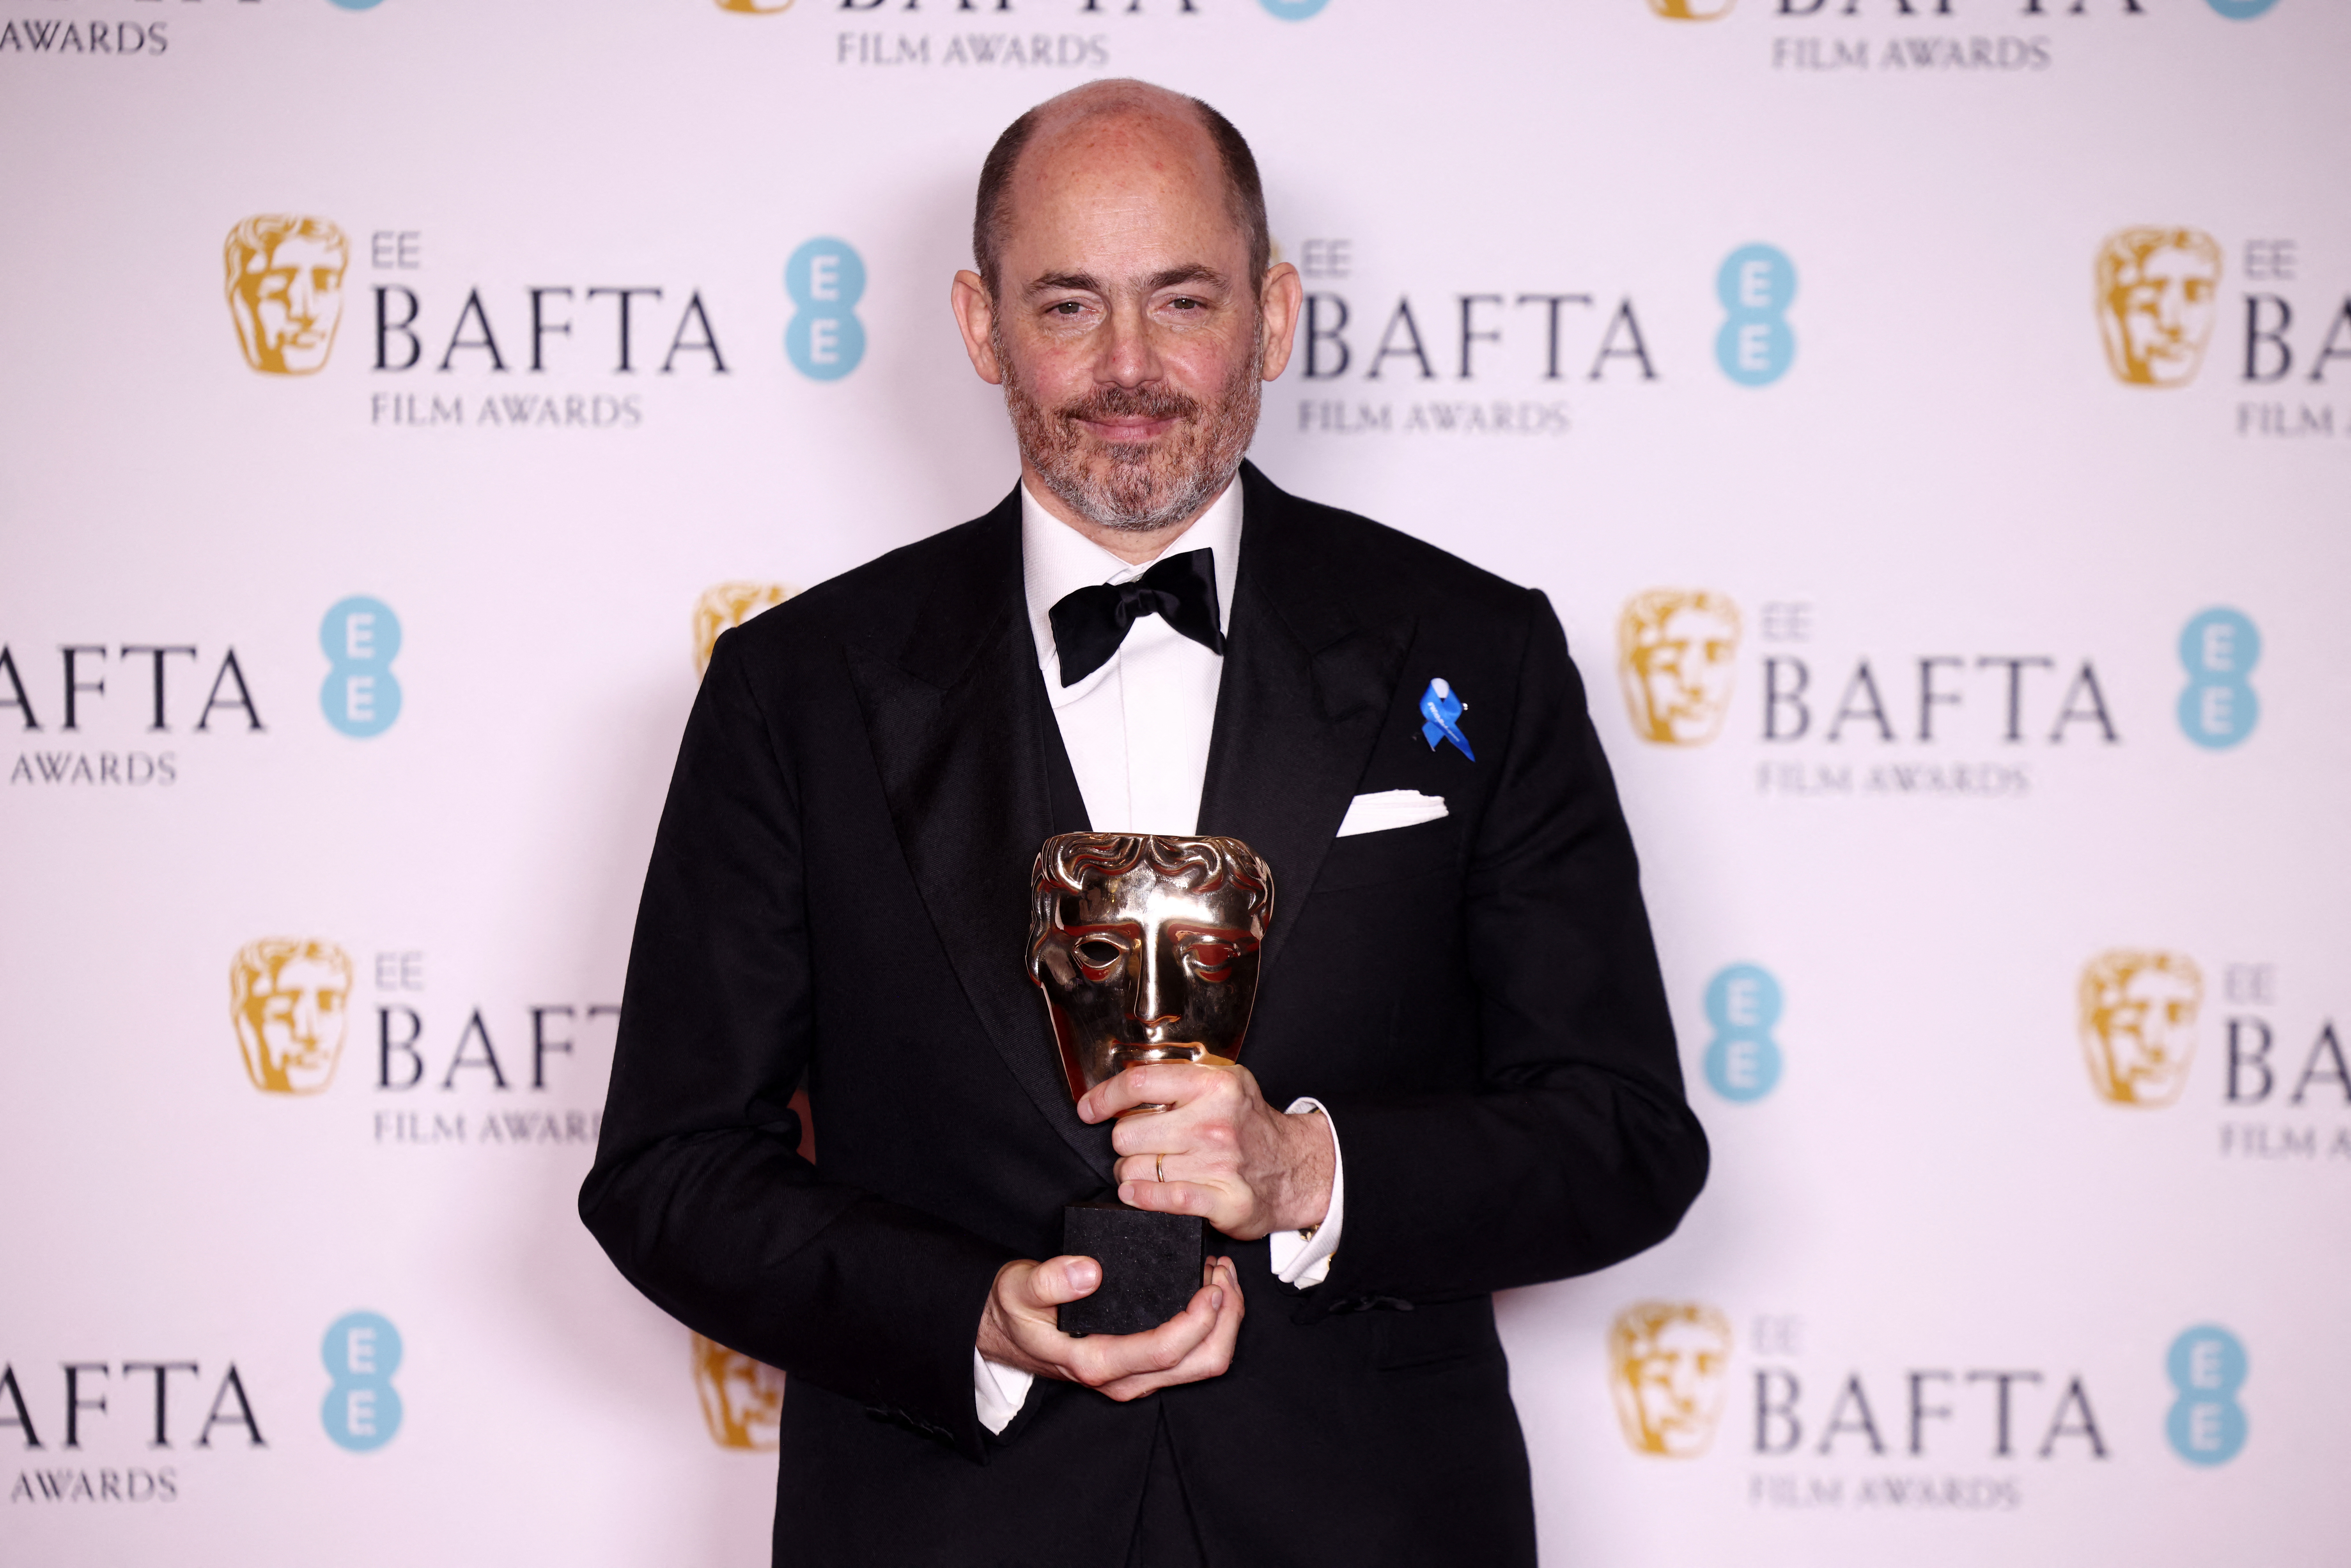 Βραβεία BAFTA: Σάρωσε η δραματική ταινία «Ουδέν νεώτερον από το Δυτικό Μέτωπο»